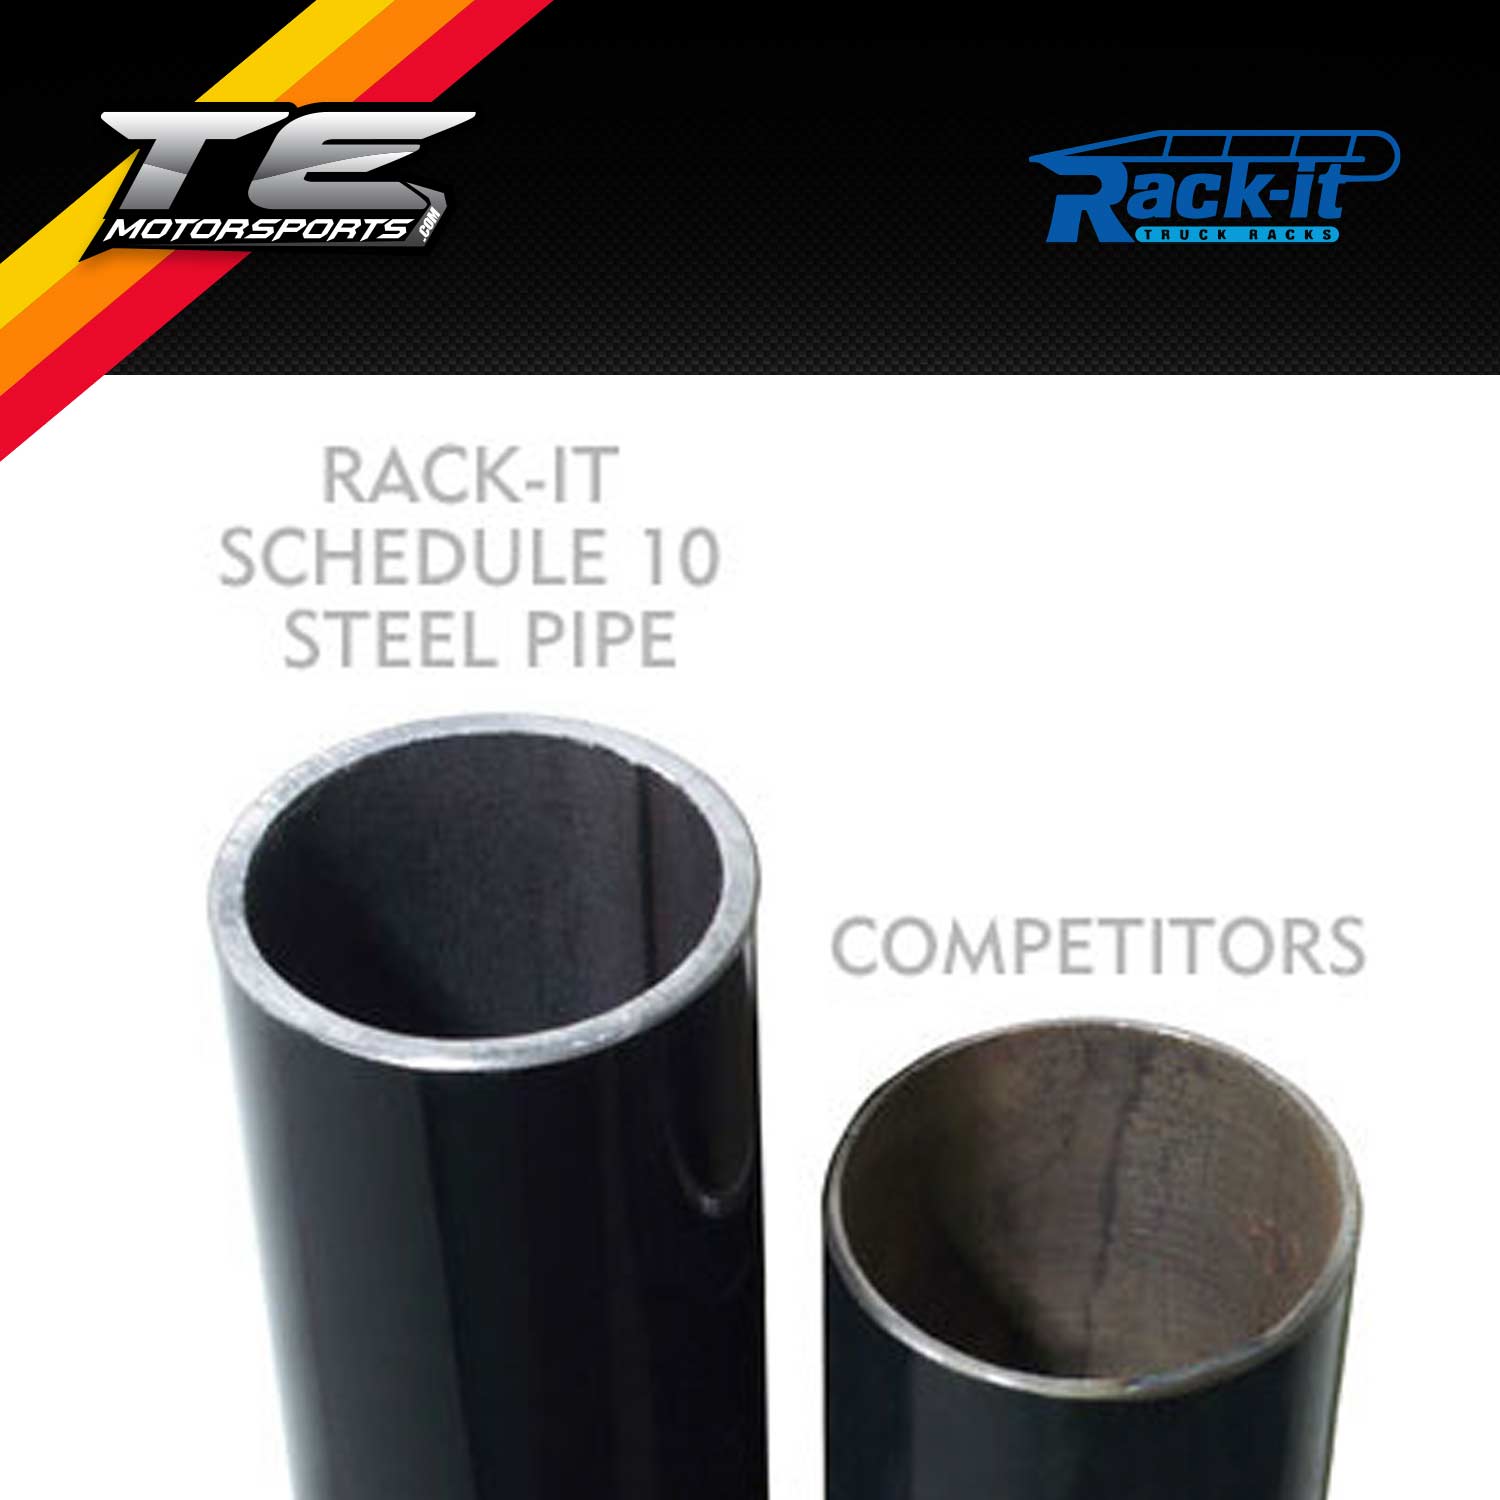 Rack-it 1000 Series Fully Welded Steel Pipe Rack